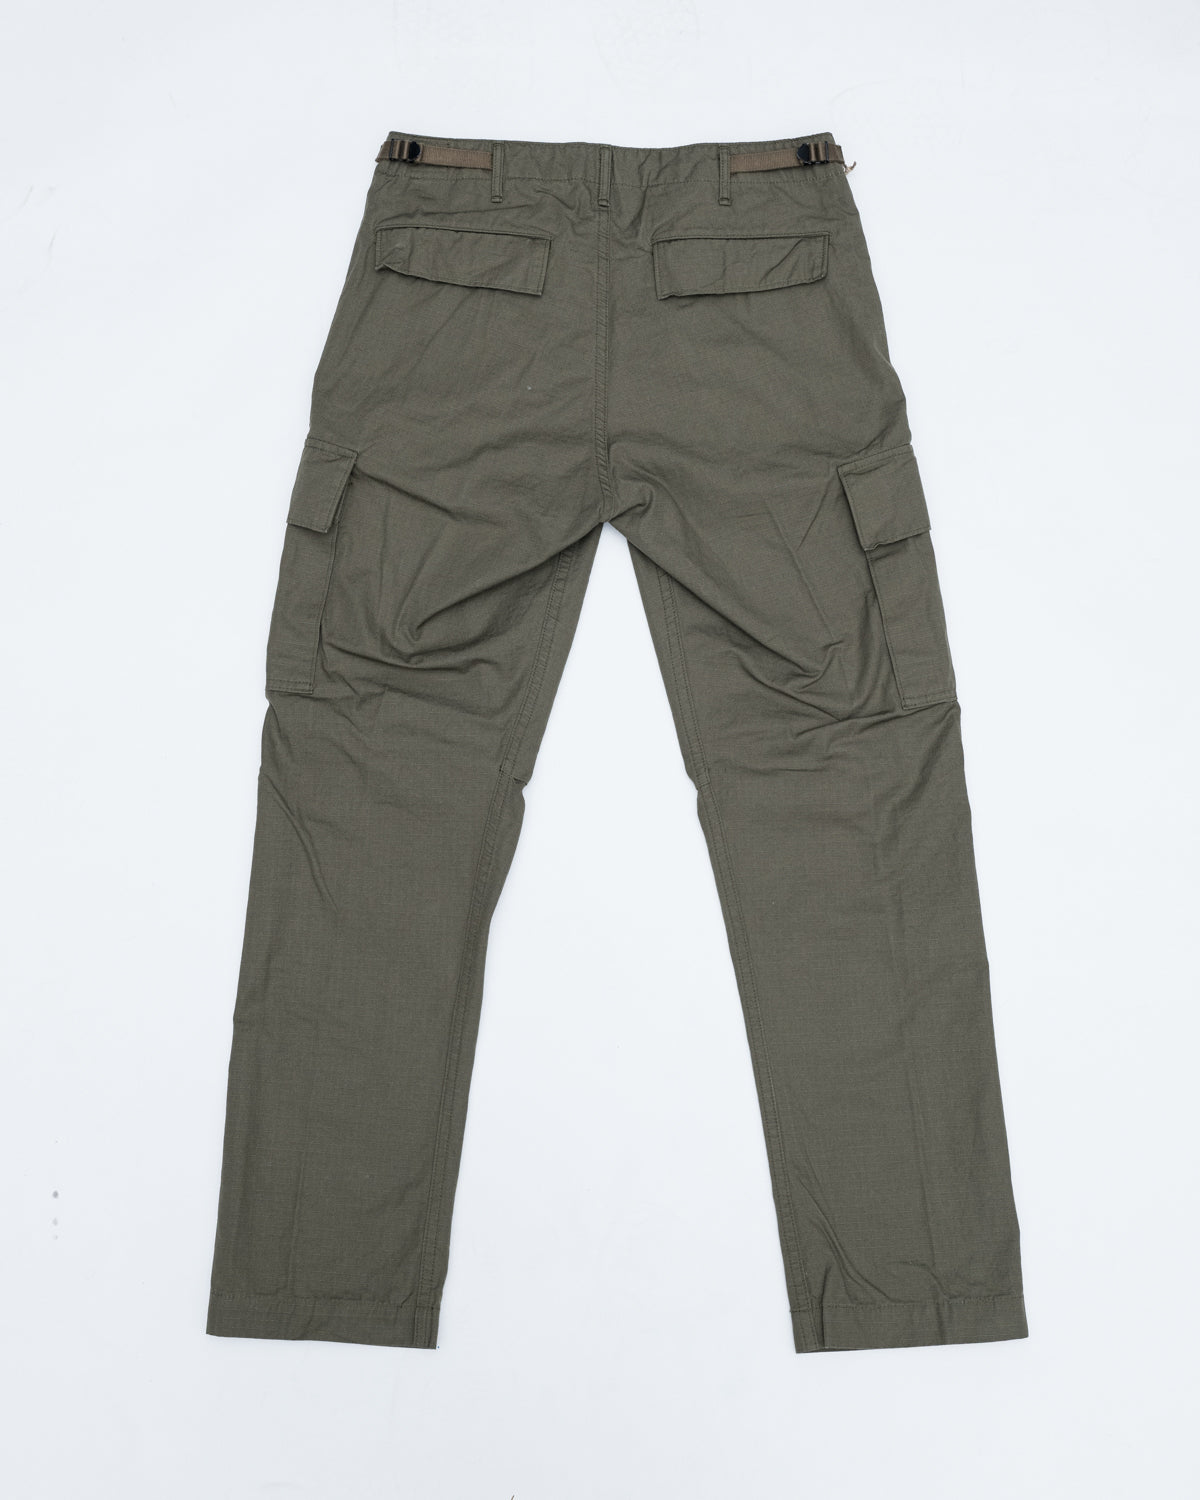 Skinny Fit Nylon cargo trousers - Beige - Men | H&M IN